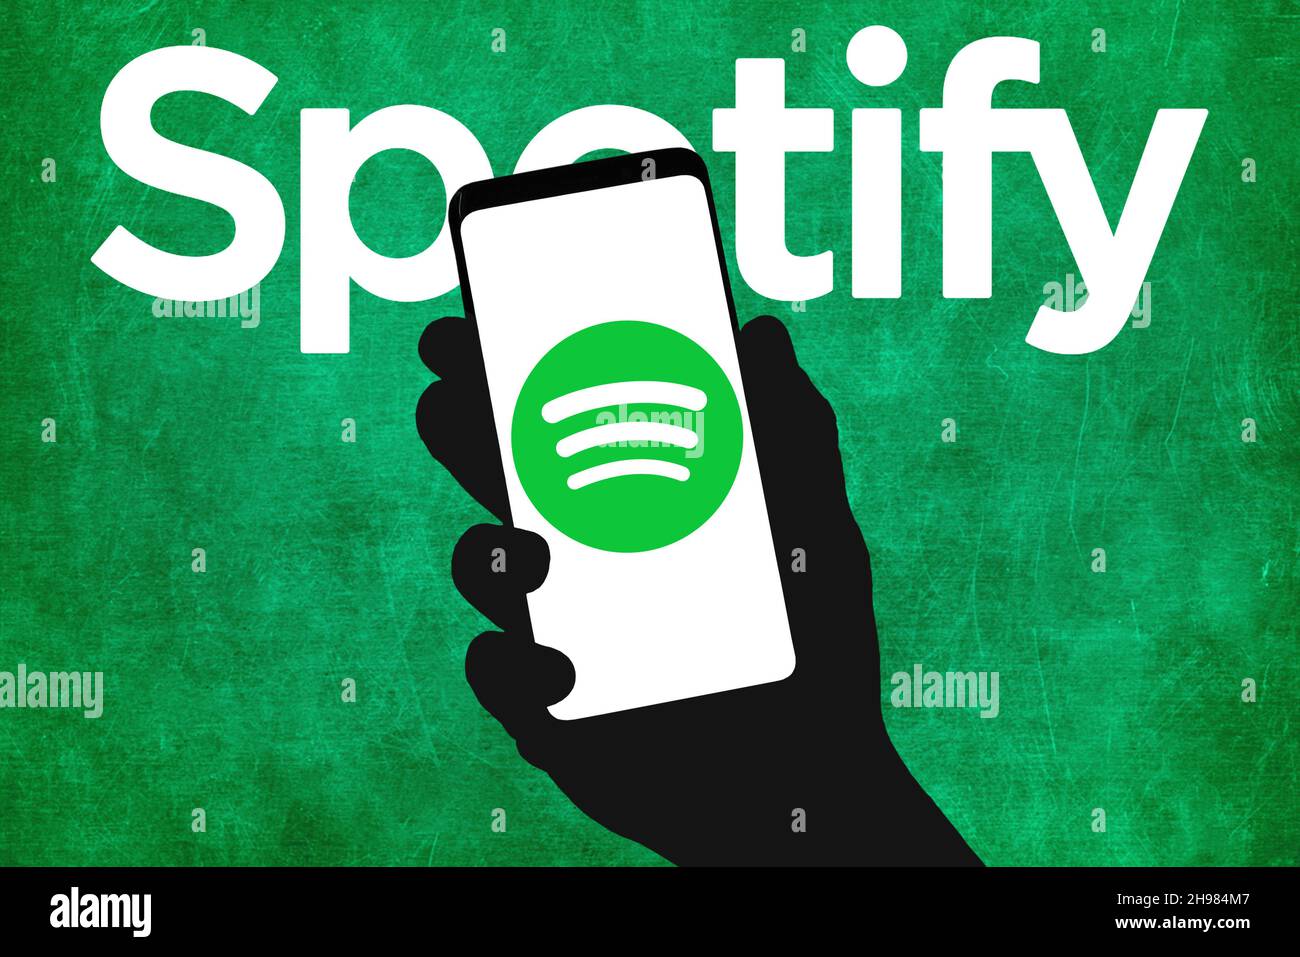 Empresa de transmisión de audio Spotify Foto de stock